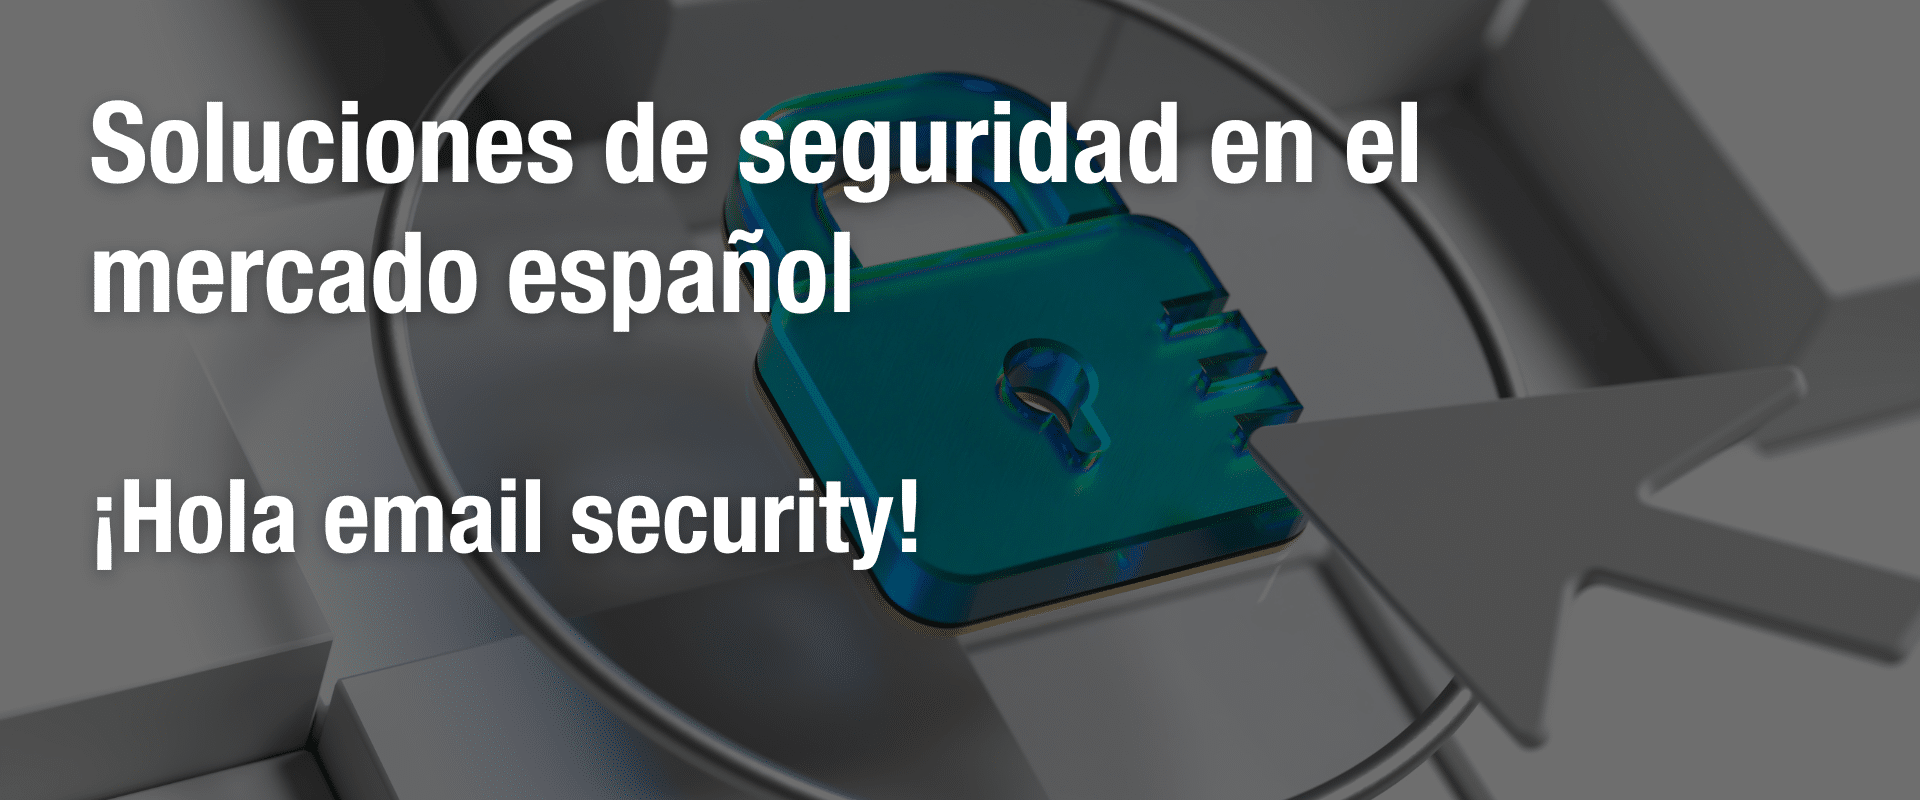 Soluciones de seguridad en el mercado español